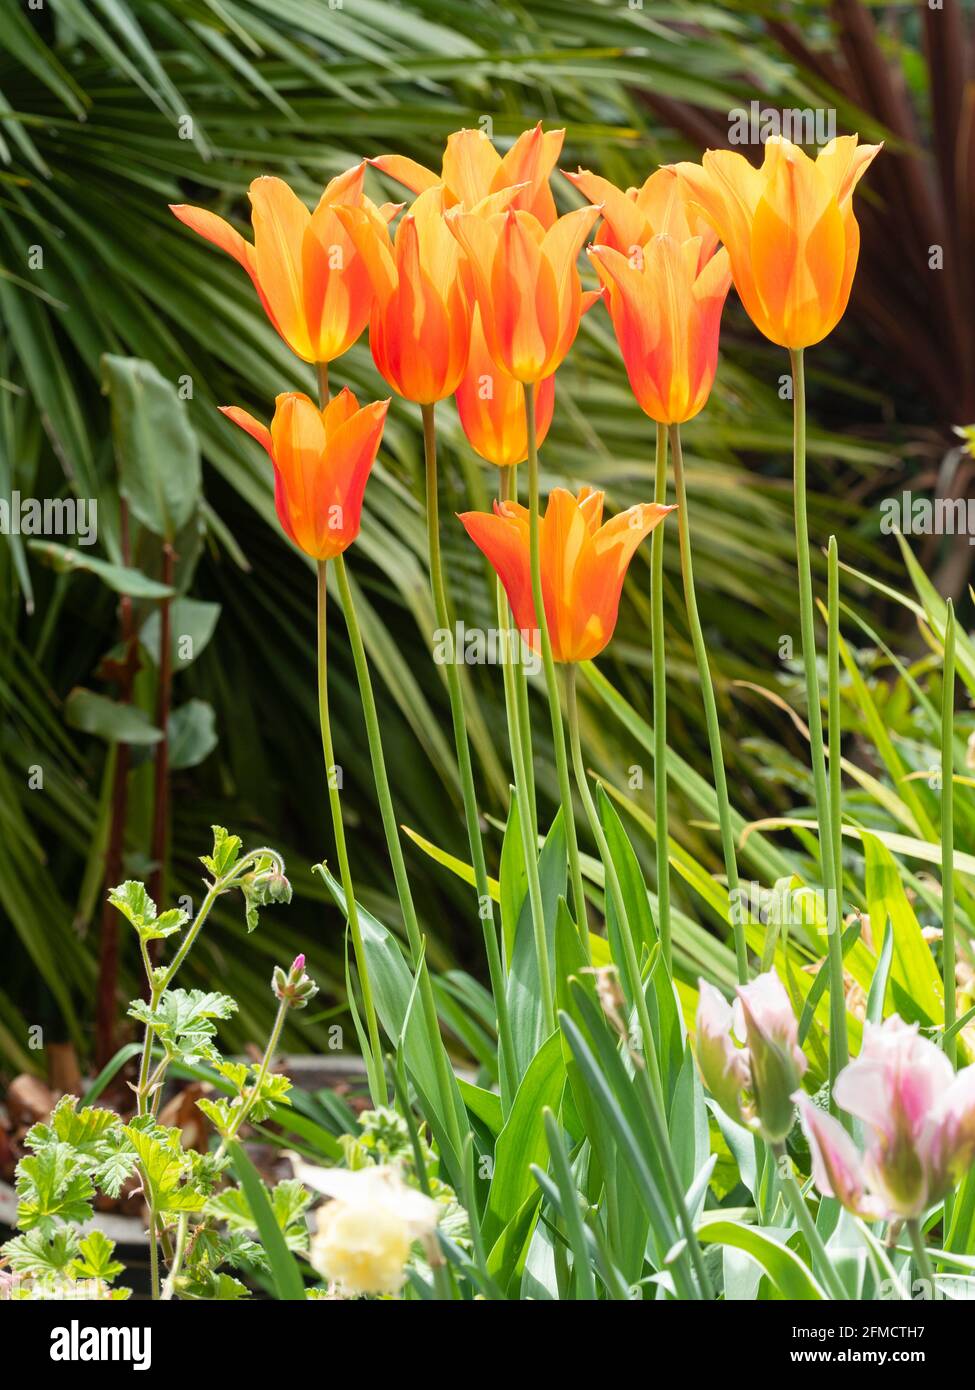 Fiori d'arancio del tulipano fiorito del giglio di primavera, Tulipa 'Ballerina Foto Stock